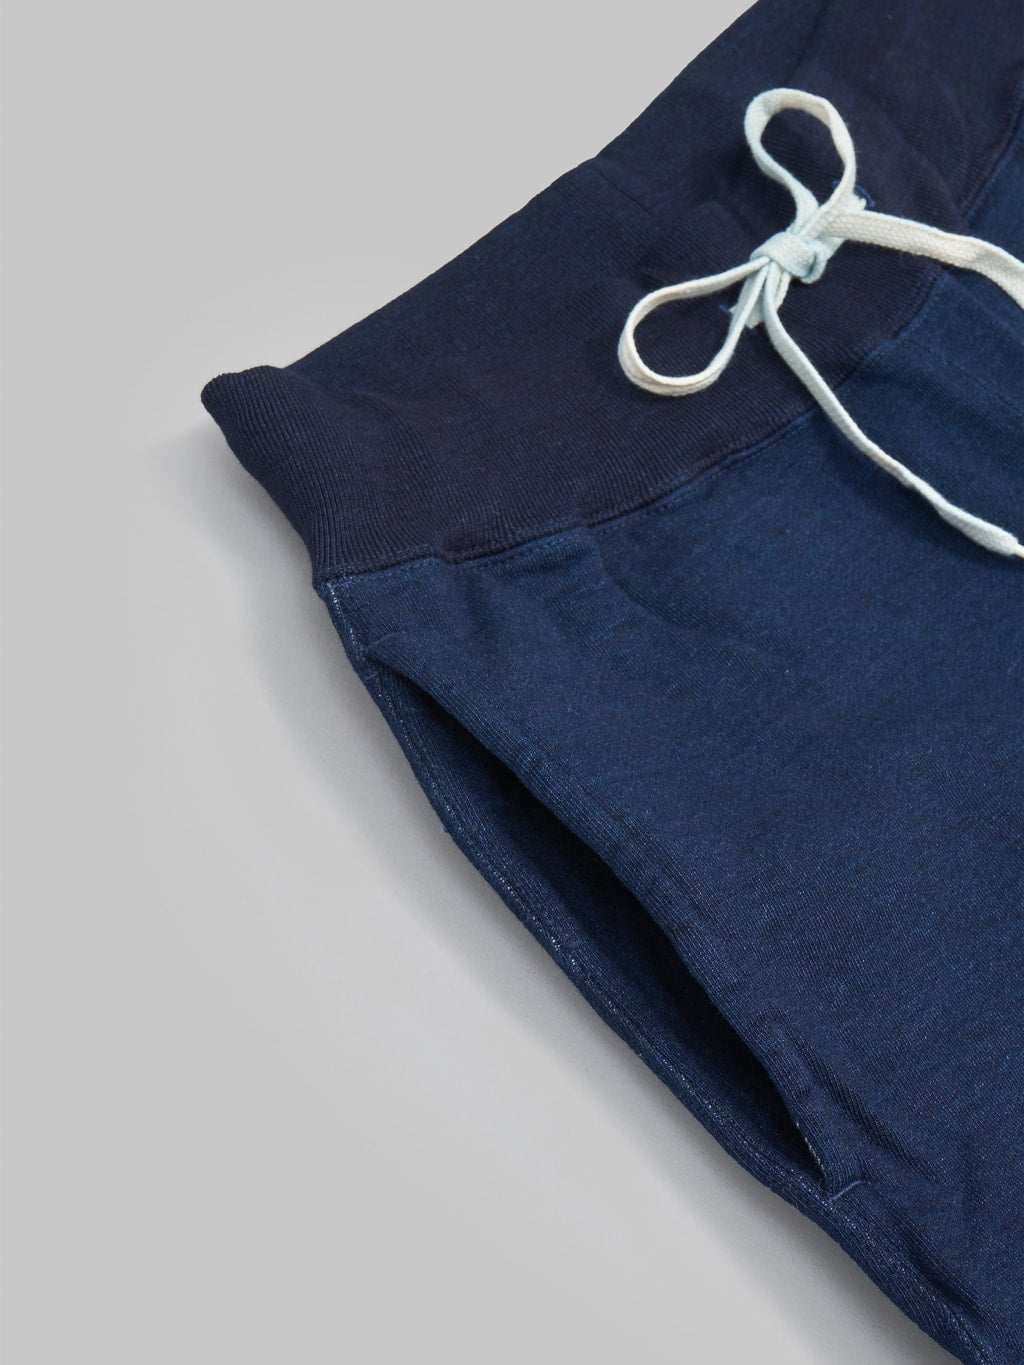 ues sweat pants indigo cotton pocket detail